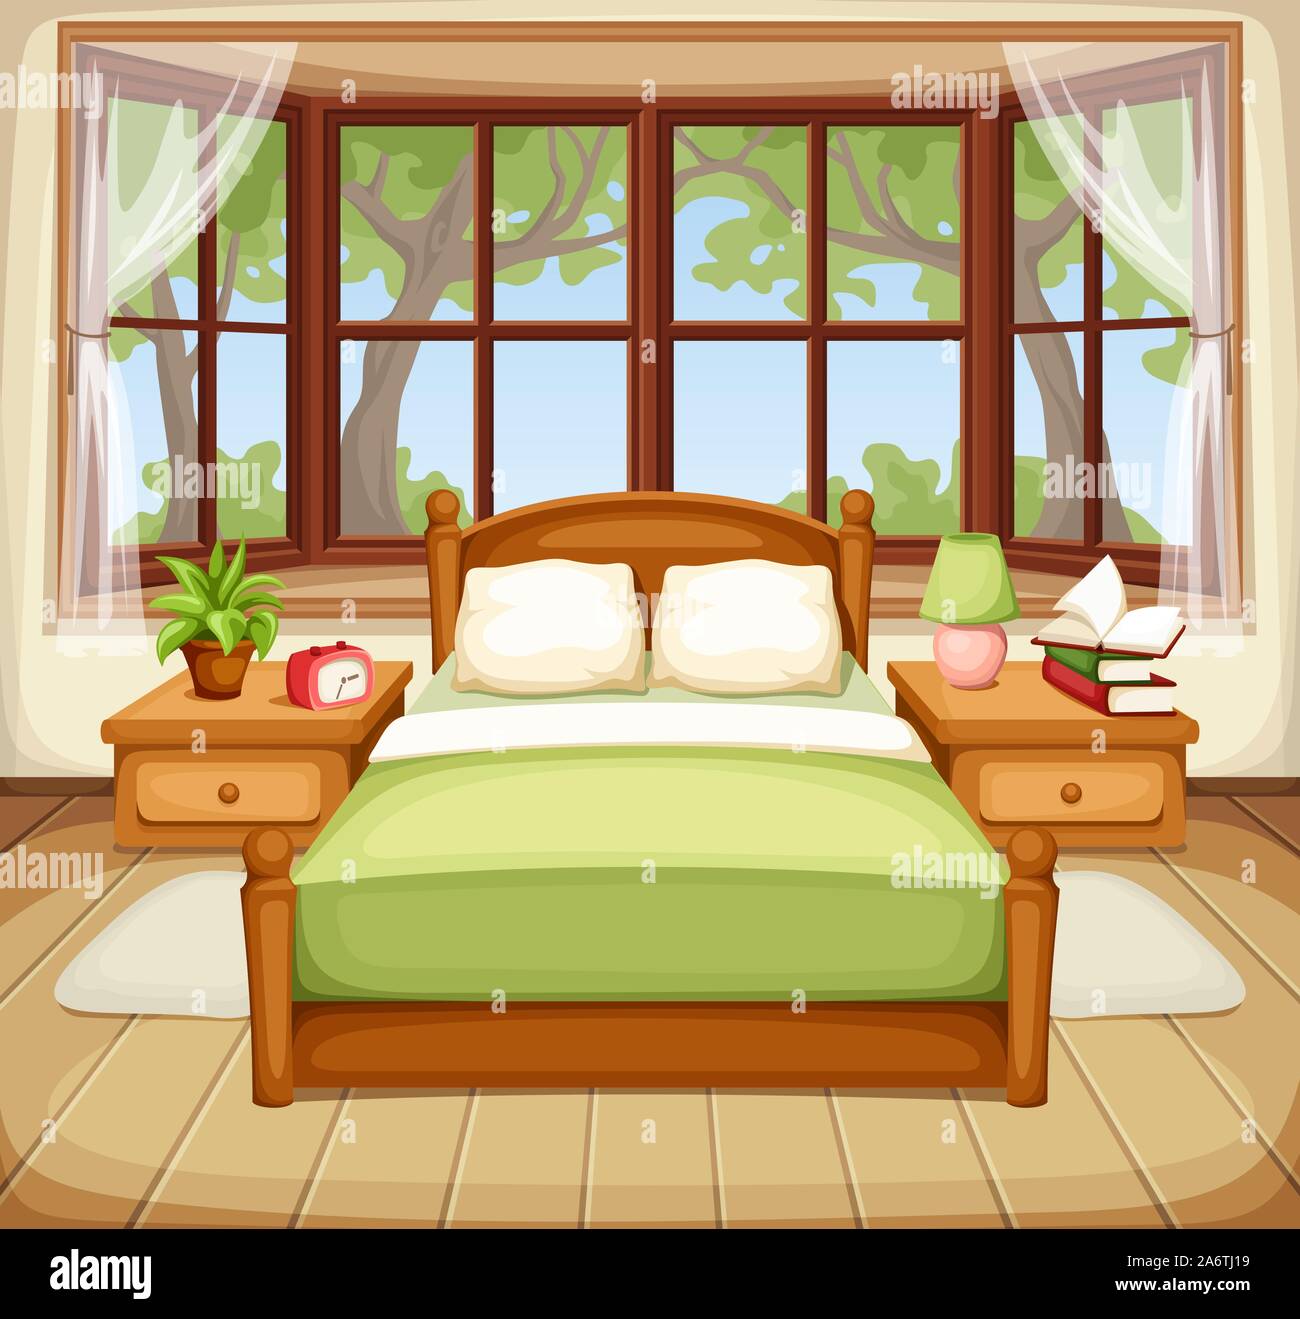 Illustrazione vettoriale di un interiore camera da letto con un letto matrimoniale e una grande finestra. Illustrazione Vettoriale